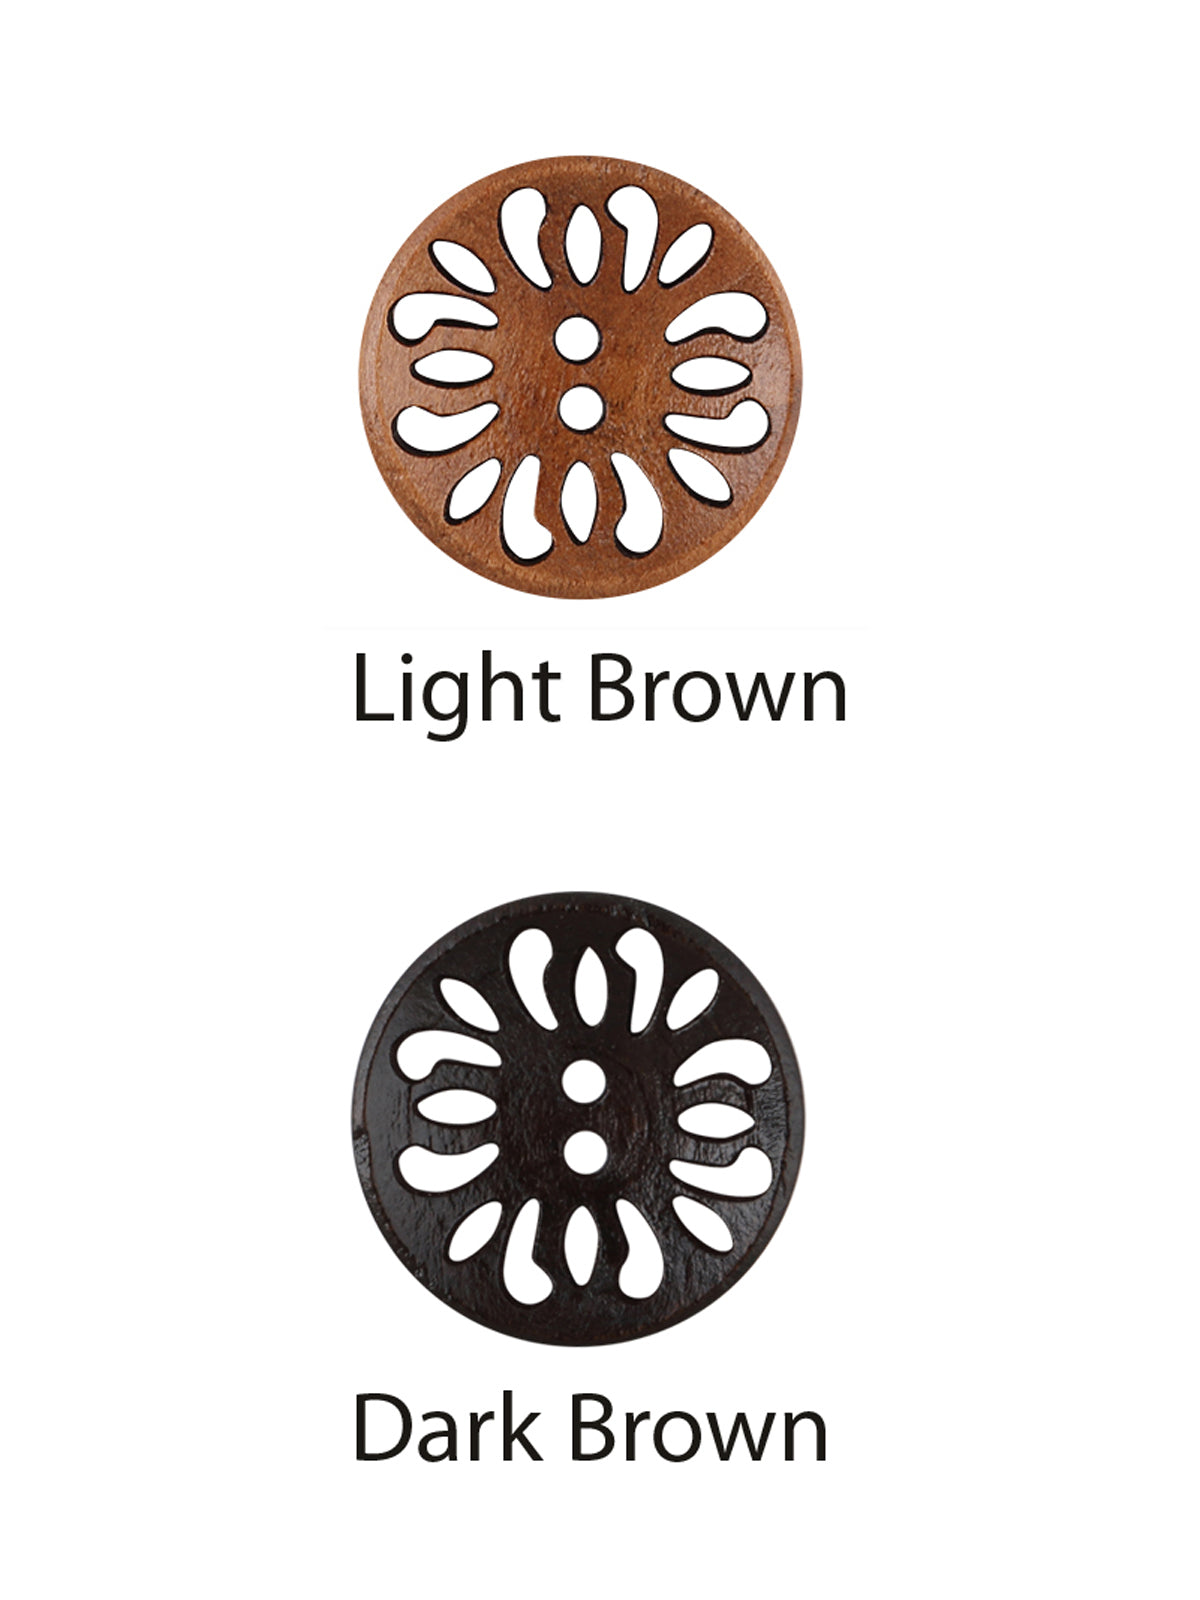 Cutwork Design Wooden Brown Coat Buttons